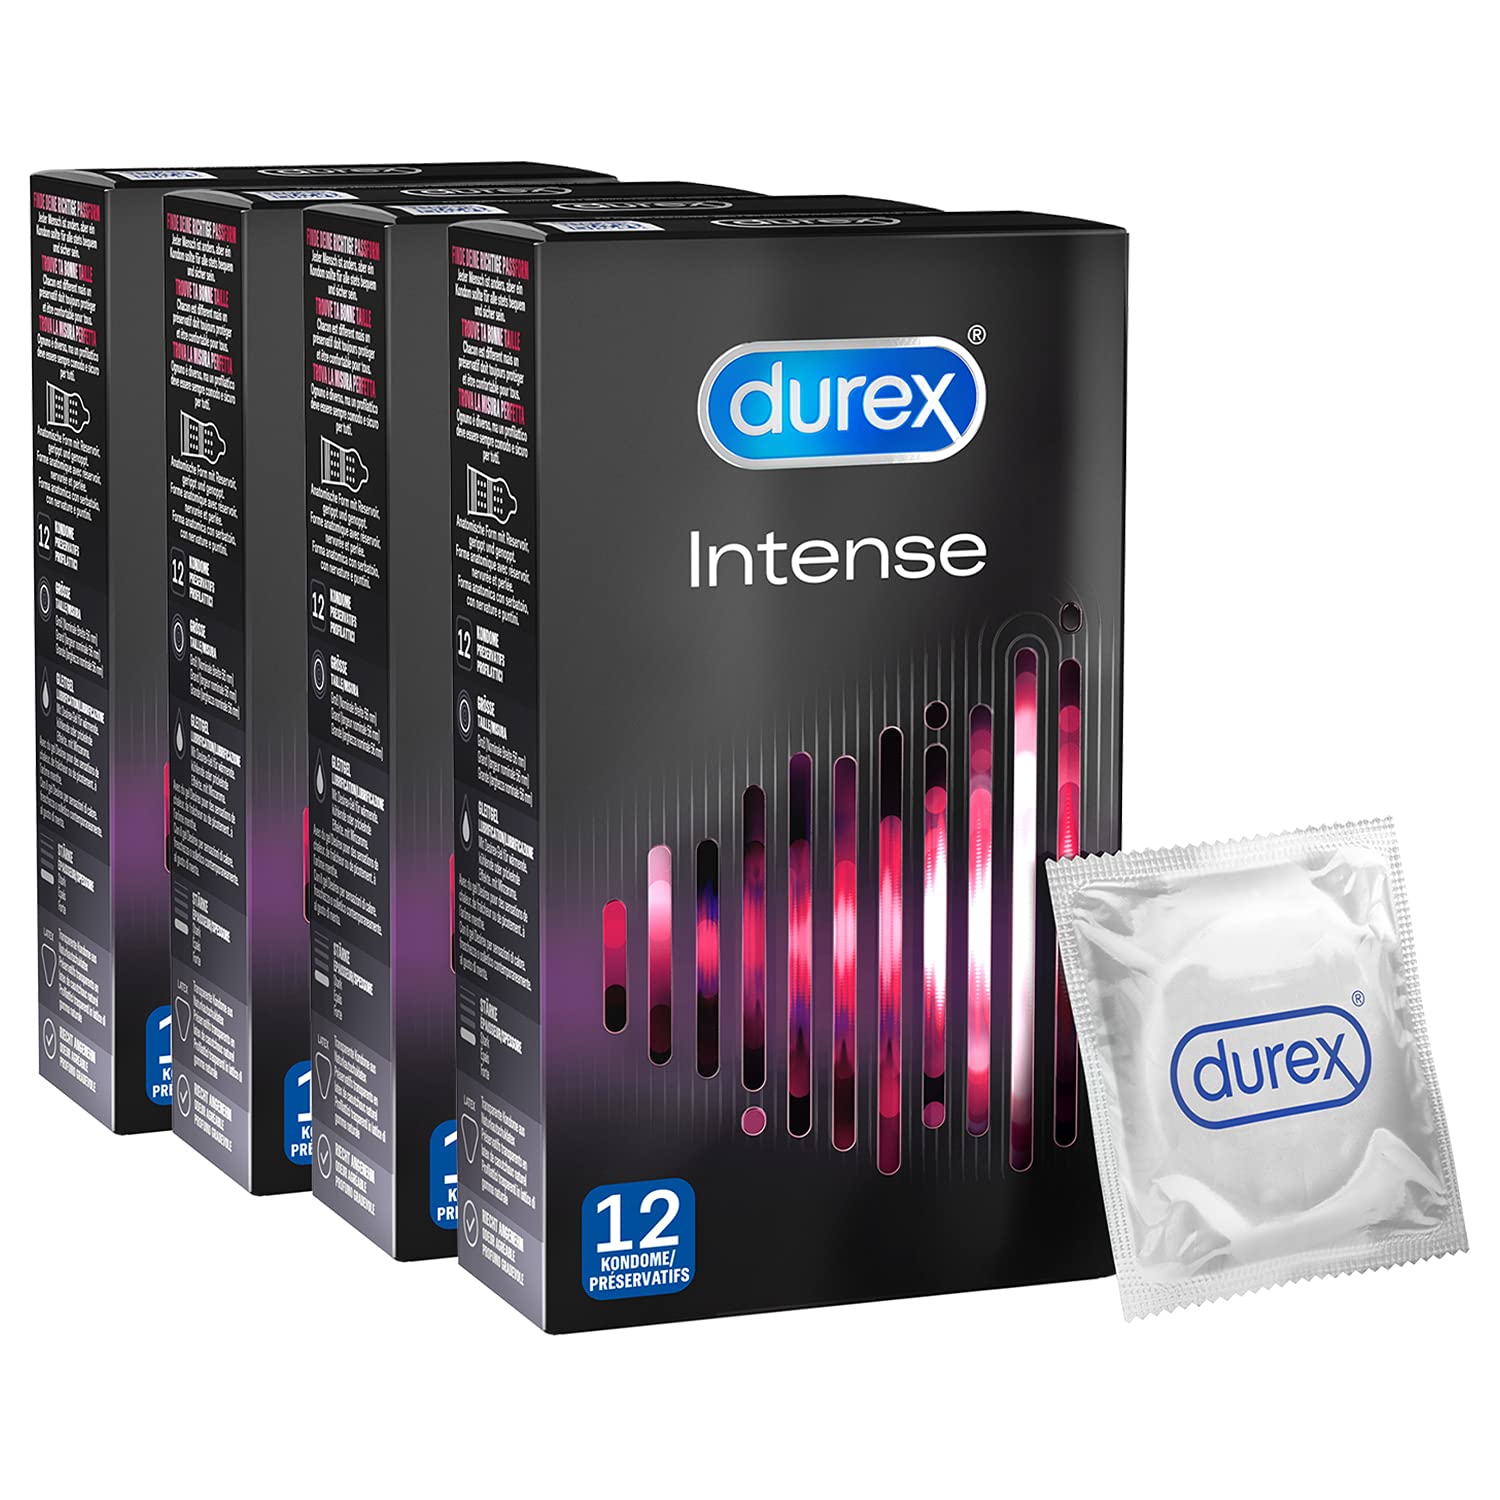 Durex Kondome genoppt und gerippt mit Stimulationsgel für eine intensive Befriedigung der Frau Durex Intense Orgasmic 48 Stück